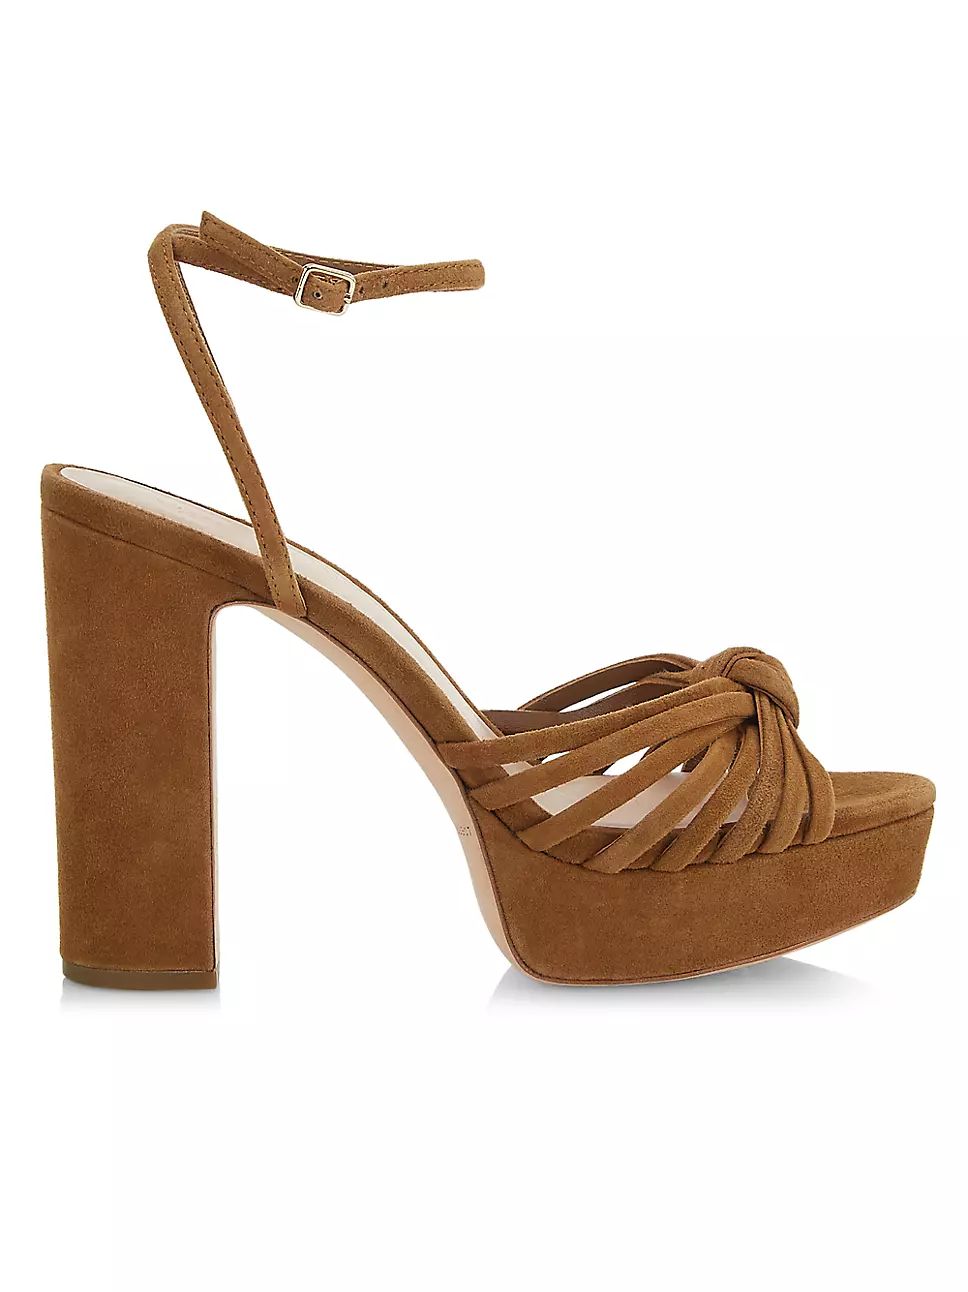 Loeffler Randall Rivka 120MM Suede Knot Platform Sandals | Saks Fifth Avenue